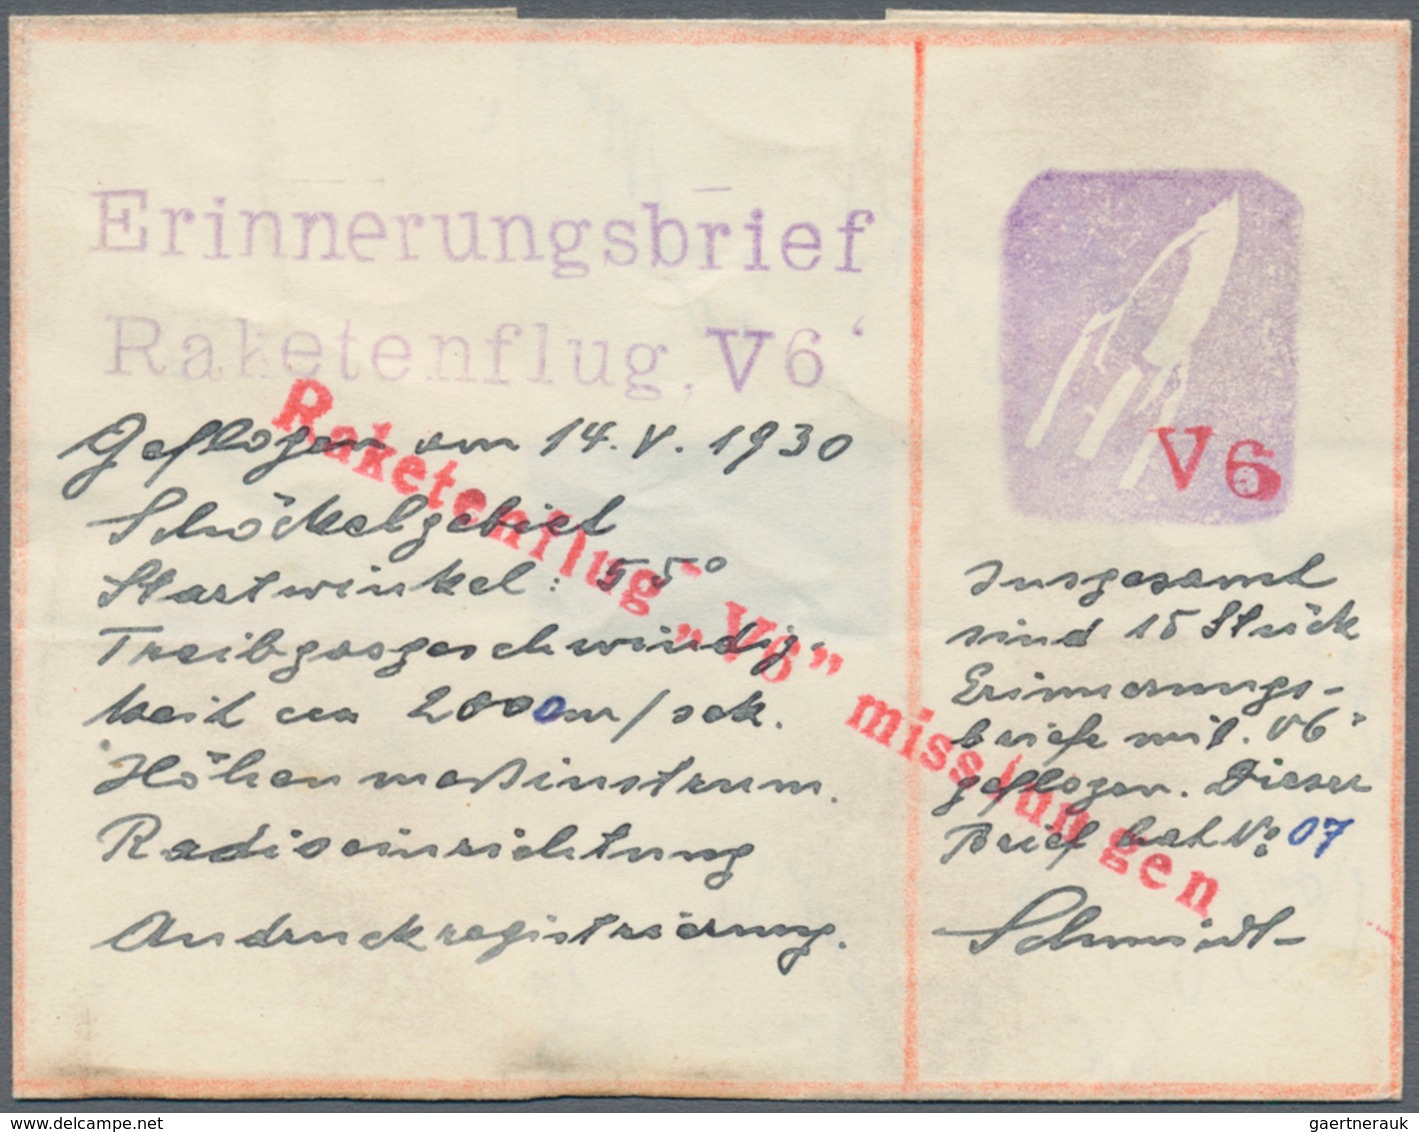 Raketenpost: Friedrich Schmiedl Friedrich Schmiedl was born on 14.05.1902 in Schwertberg in Upper Au